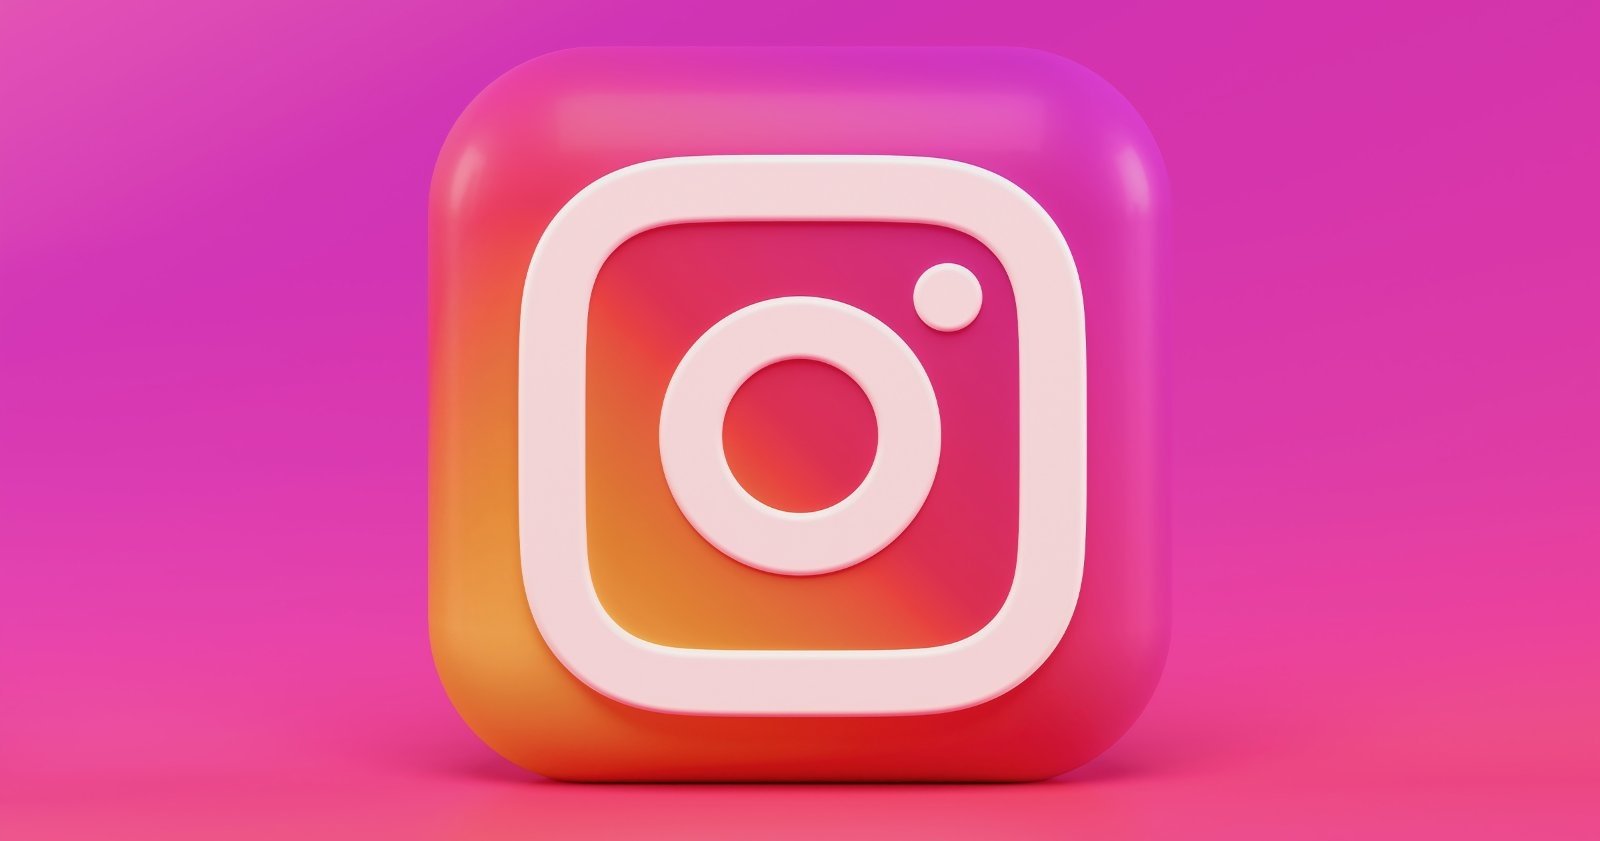 The Instagram app icon